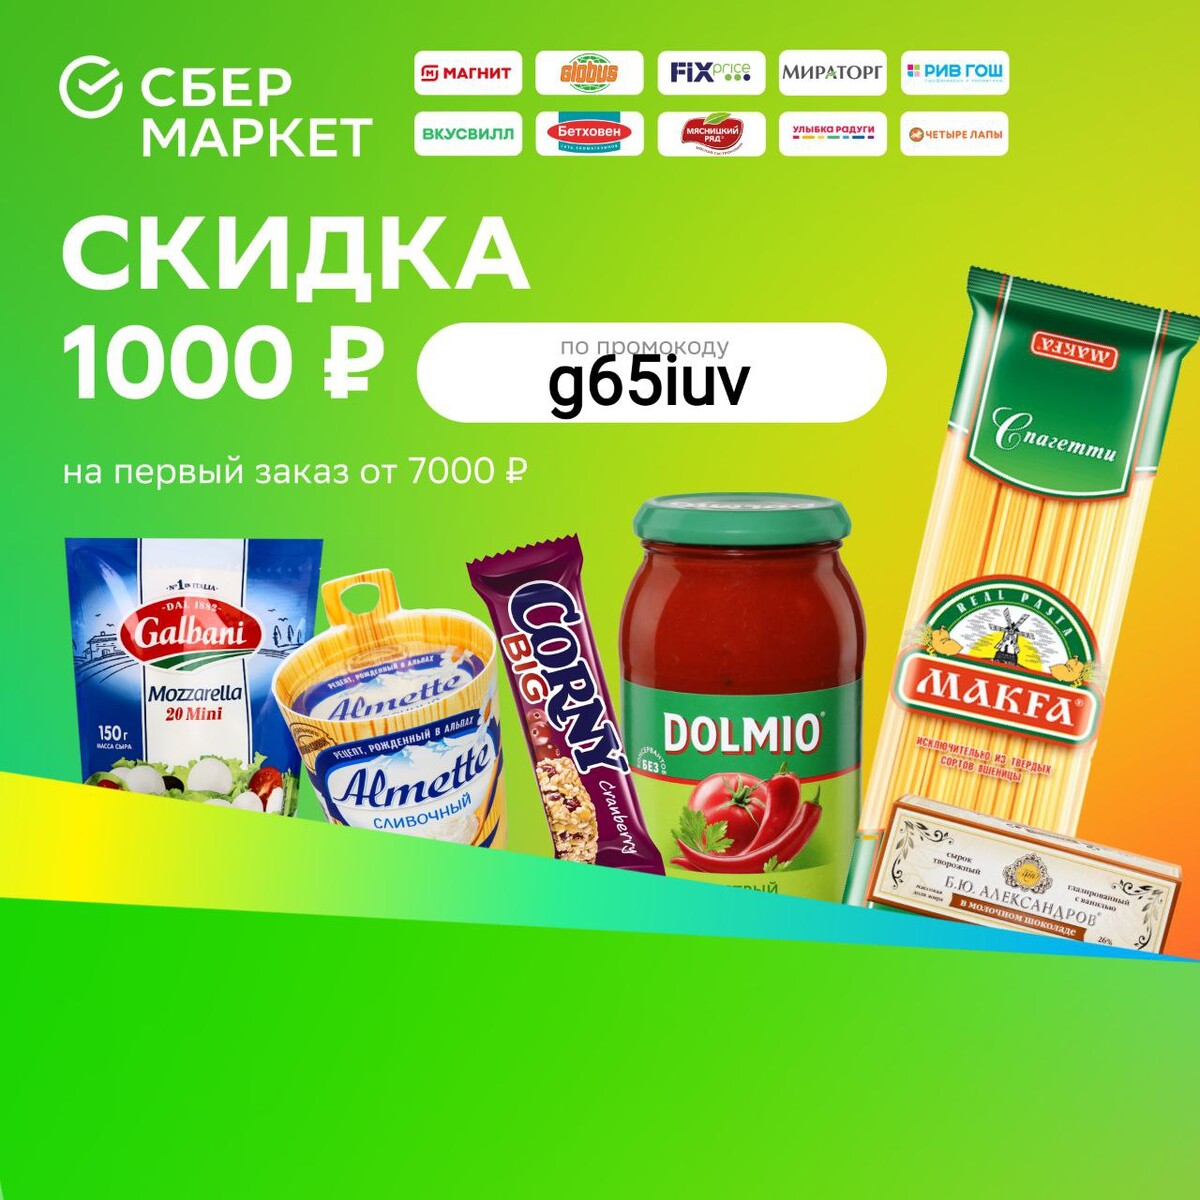 Сбермаркет 1000 руб на первый заказ. Сбермаркет скидка 1000 рублей